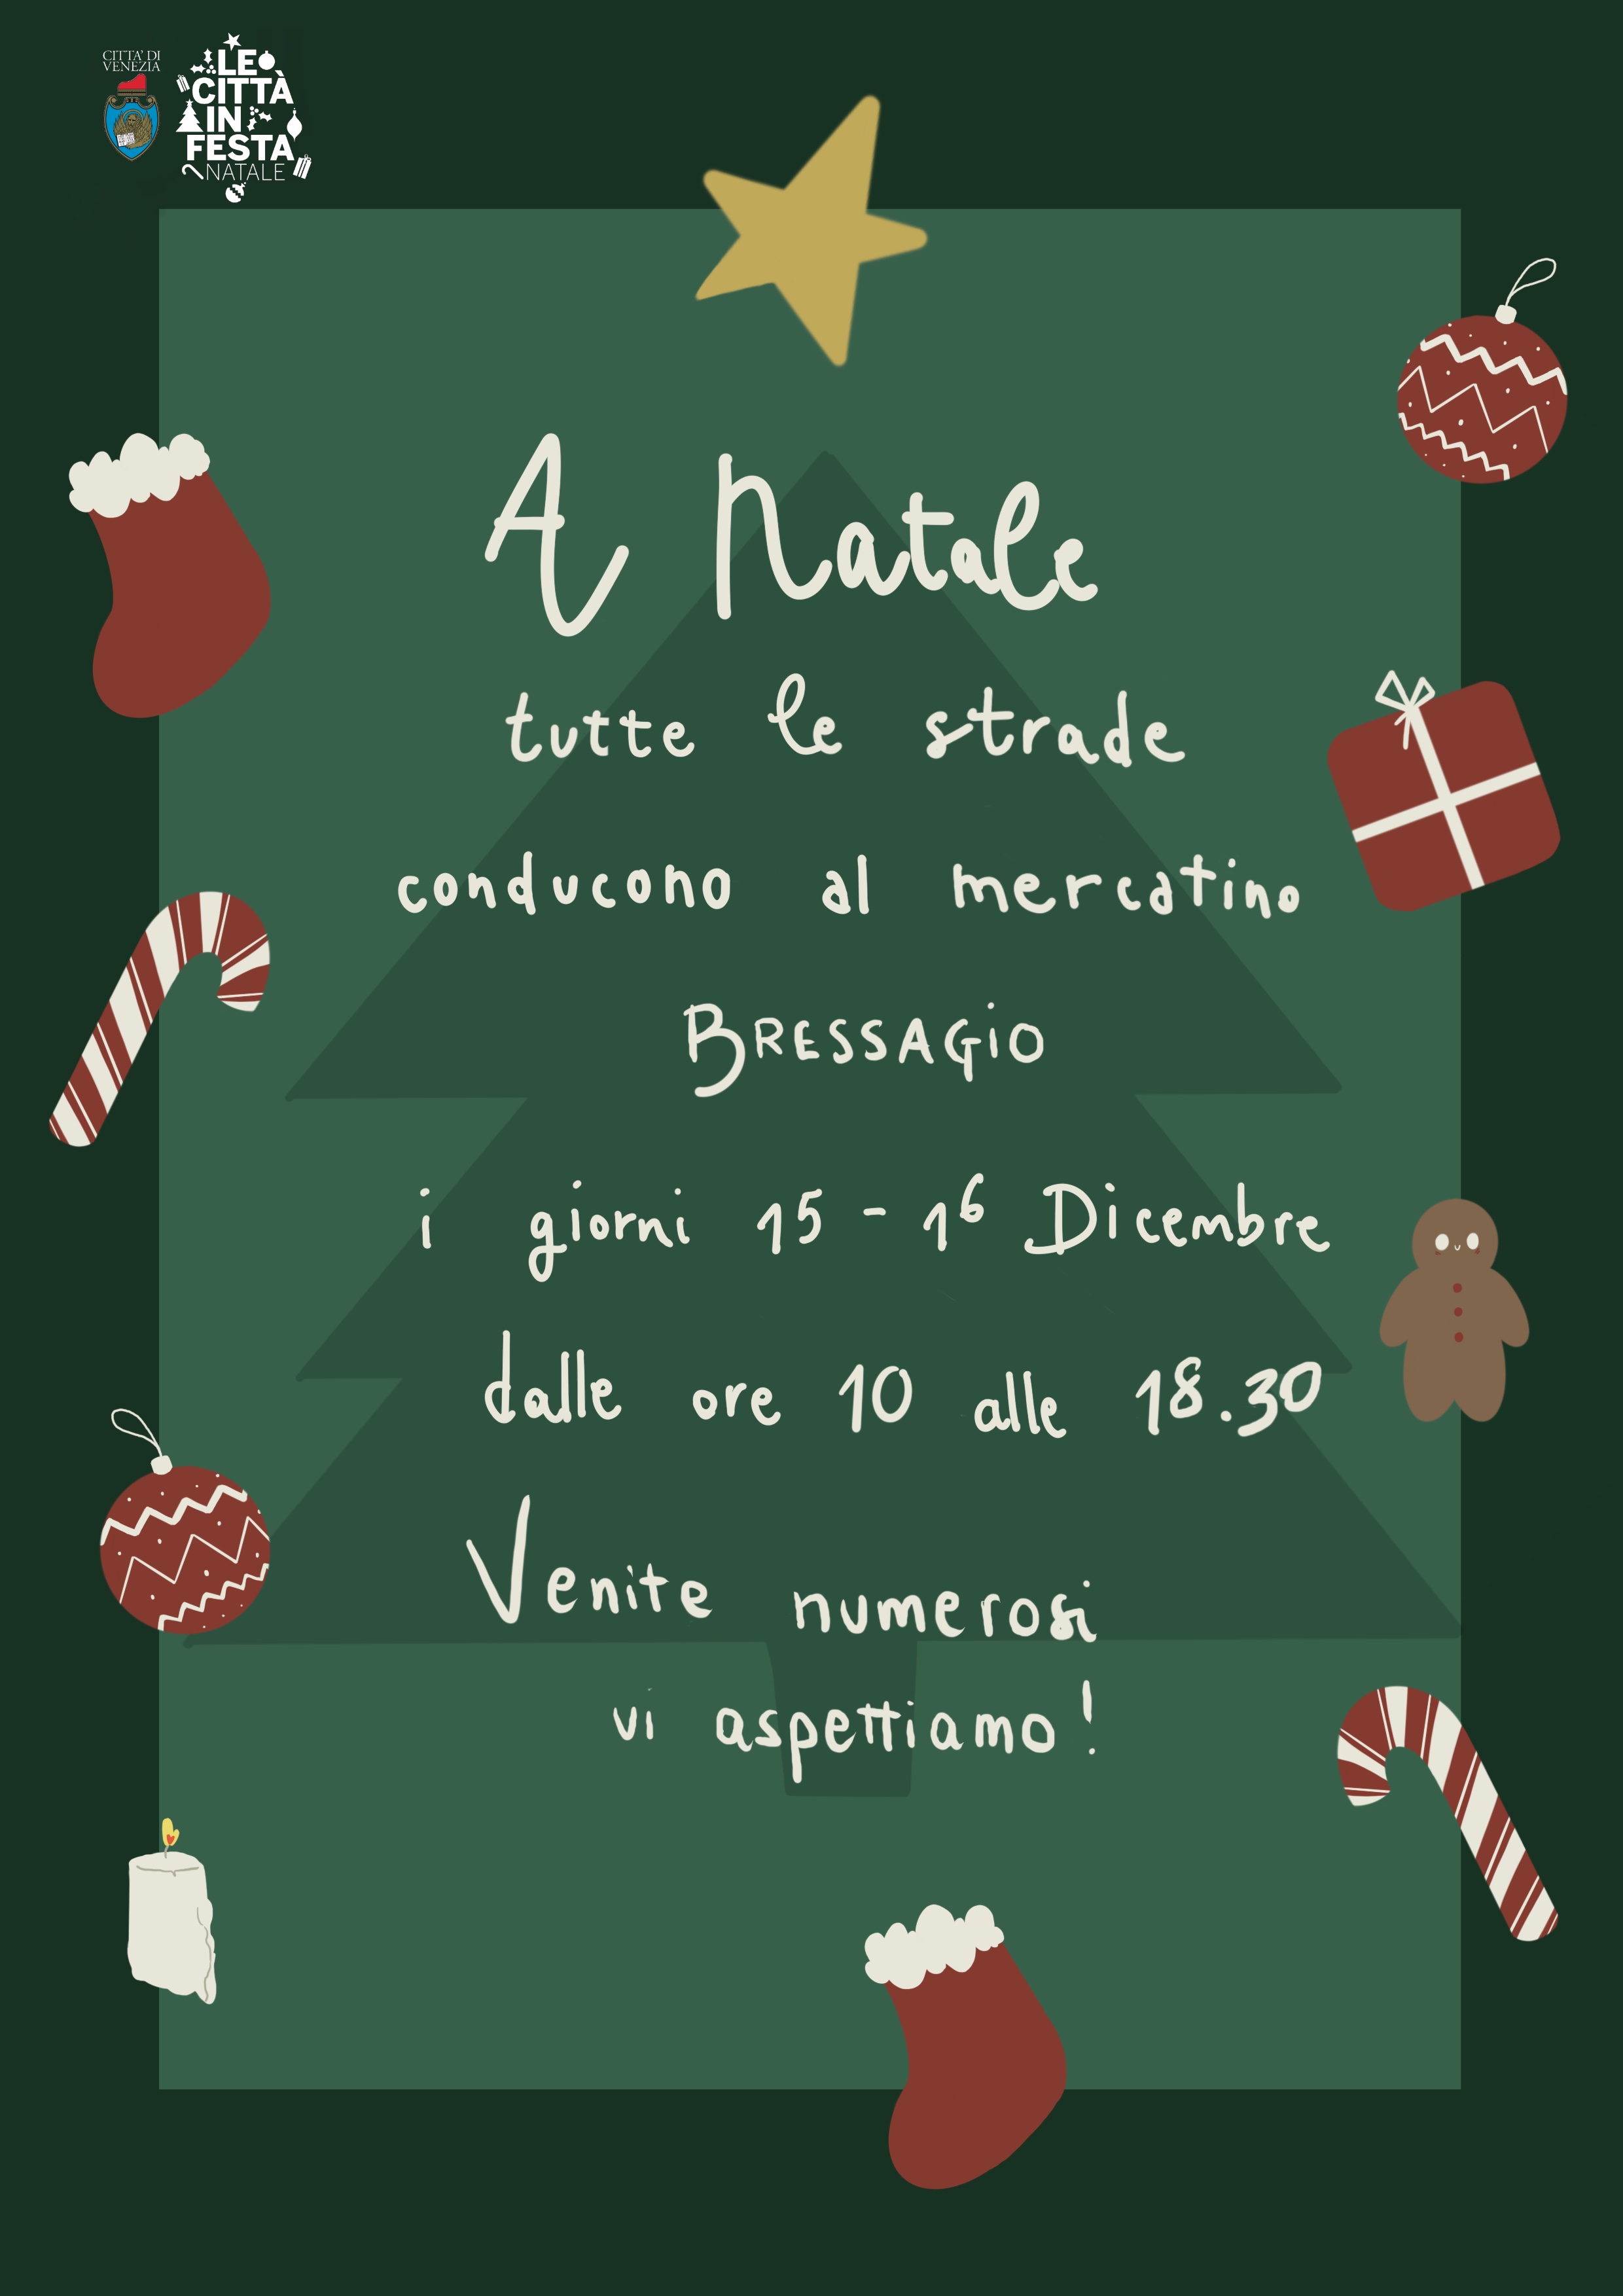 Locandina con informazioni sul mercatino e decorazioni natalizie (stelle, pacchetti, bastoncini di zucchero)